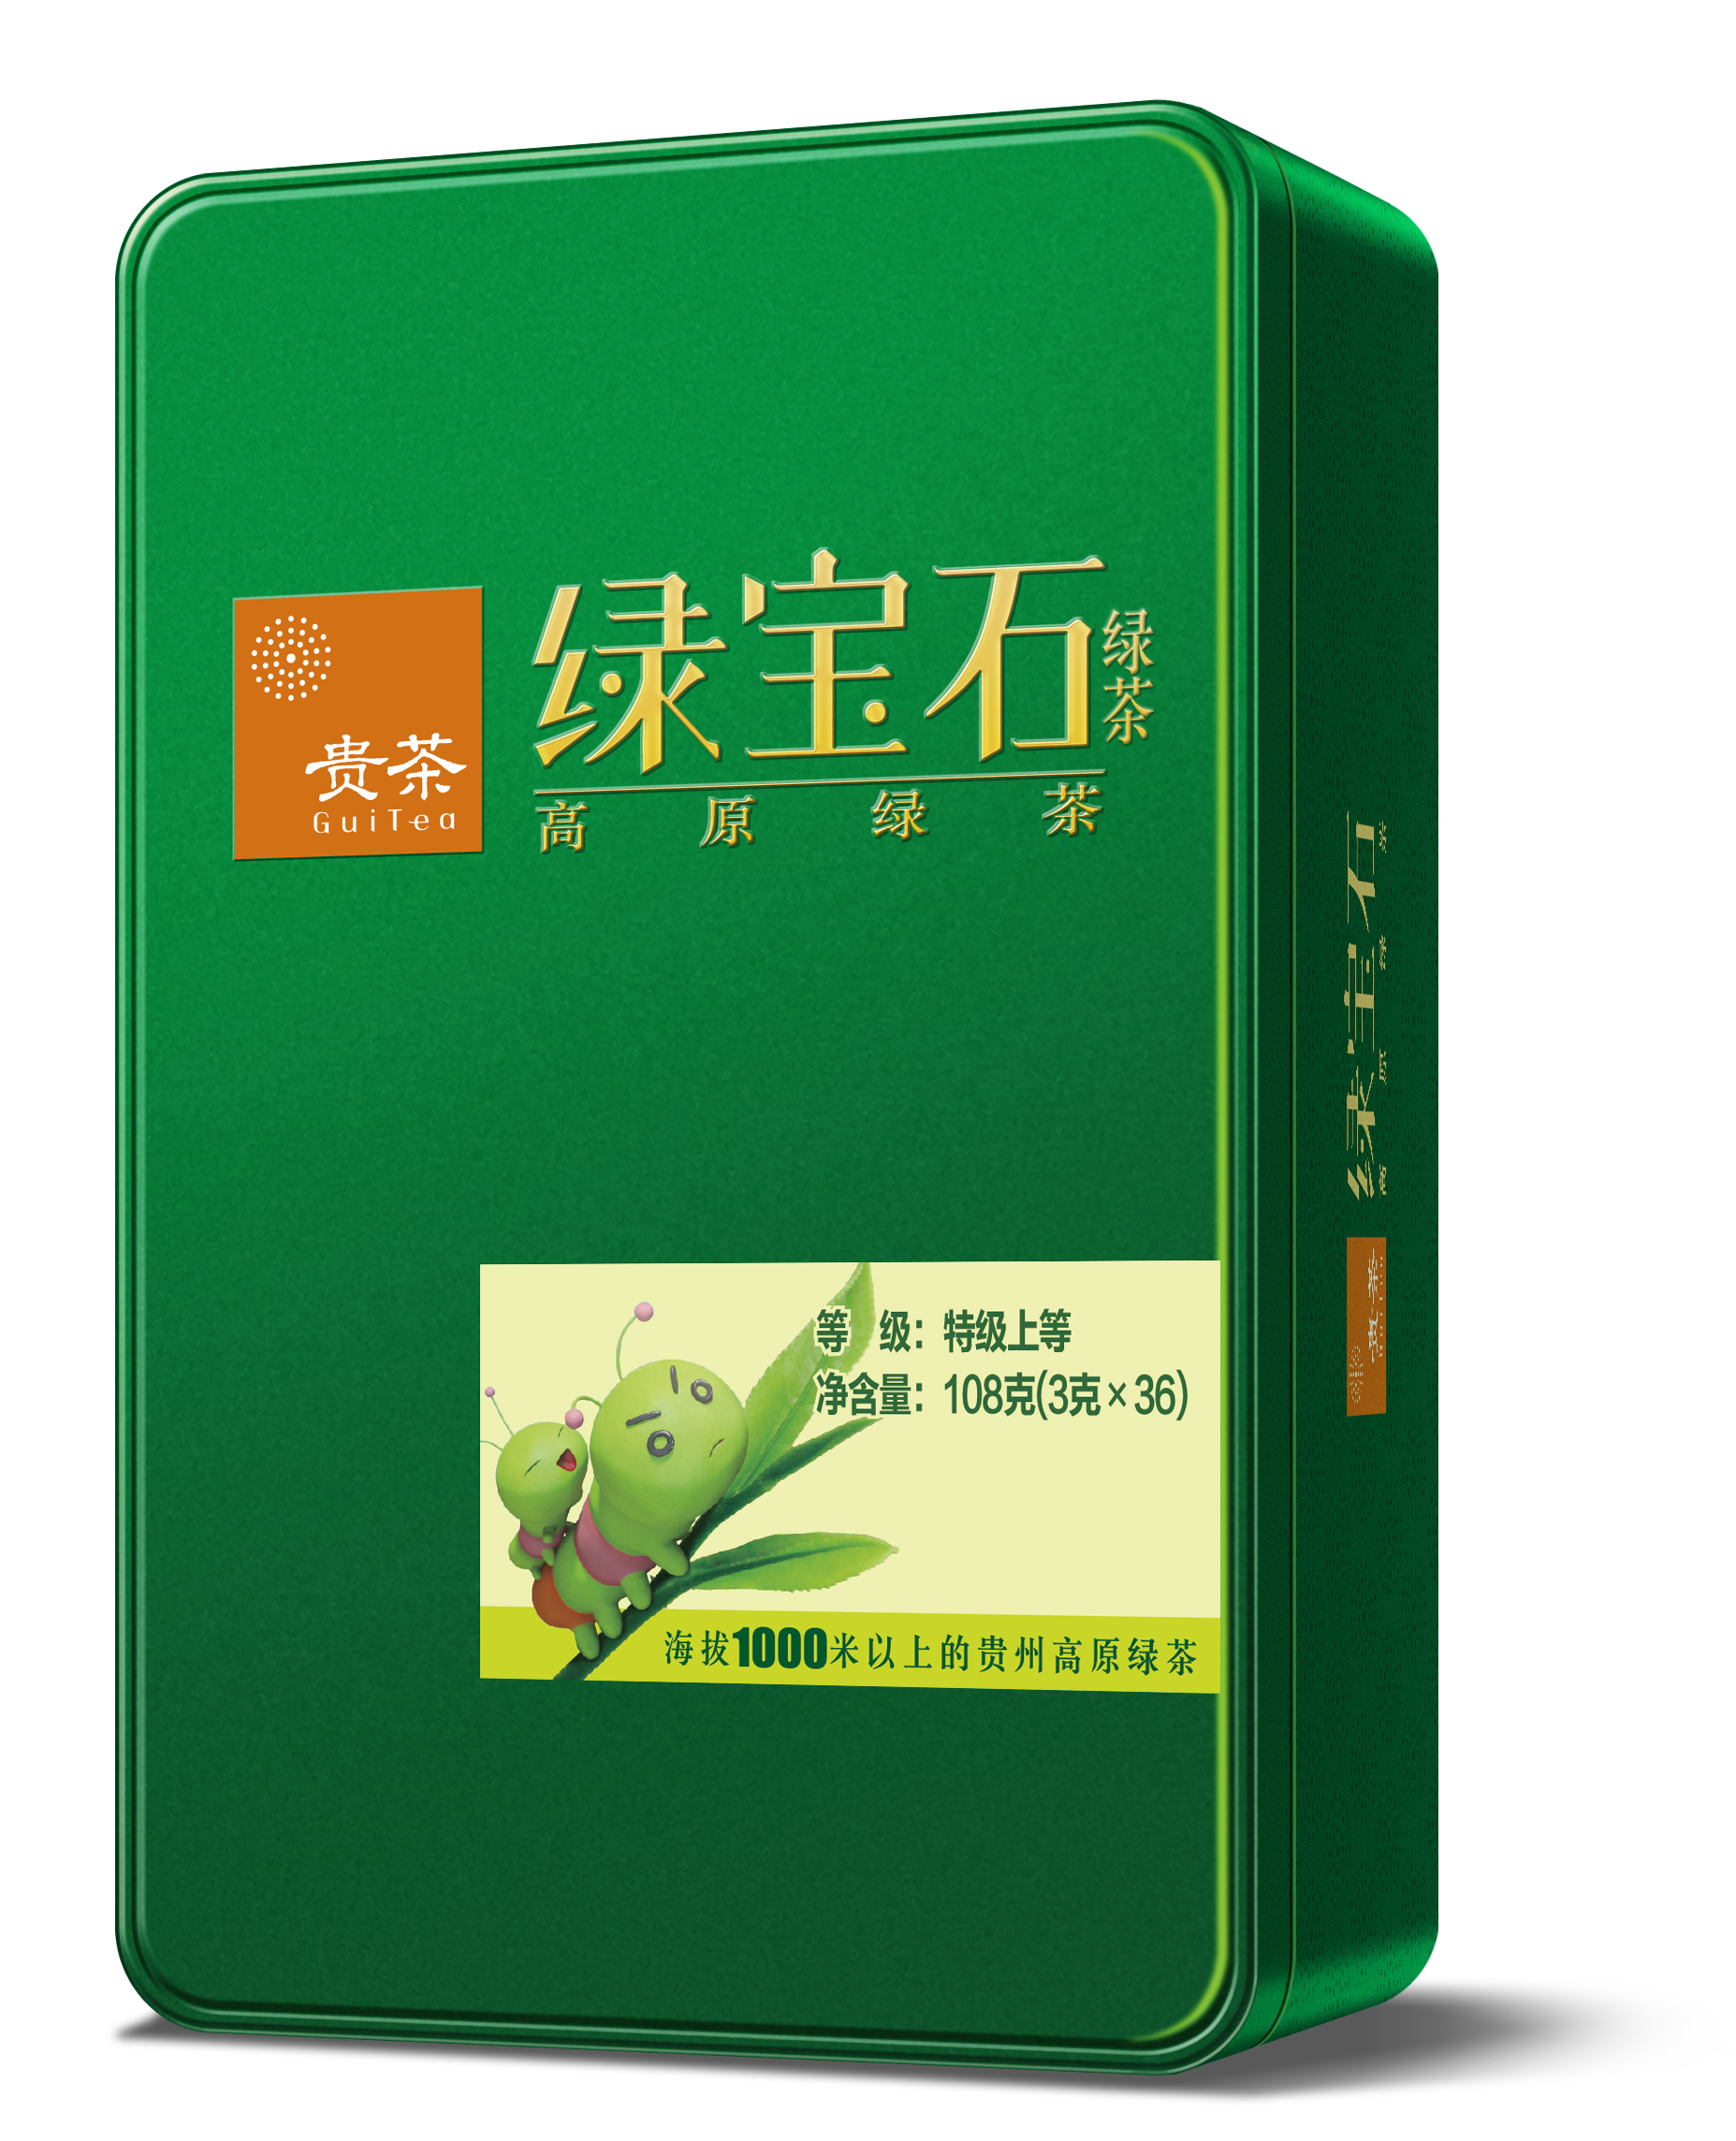 綠寶石綠茶